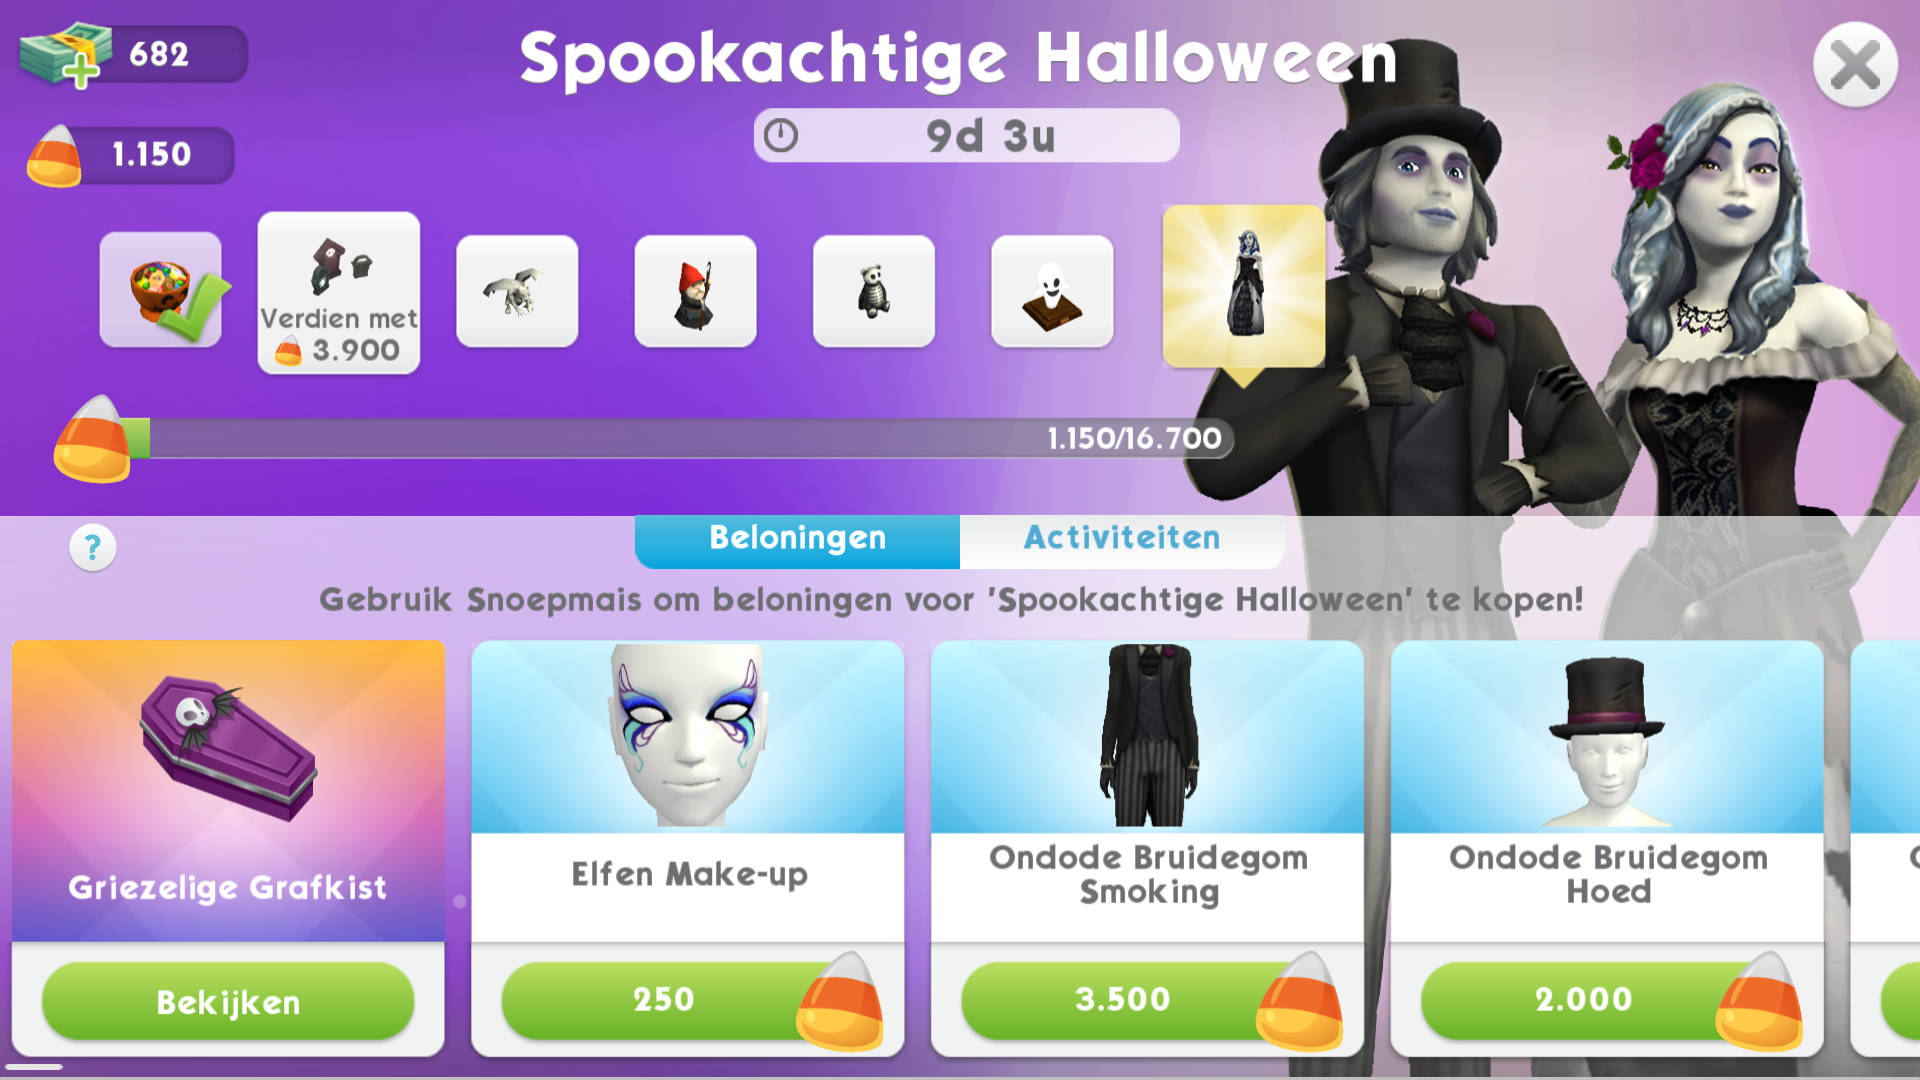 Spookachtige Halloween evenement